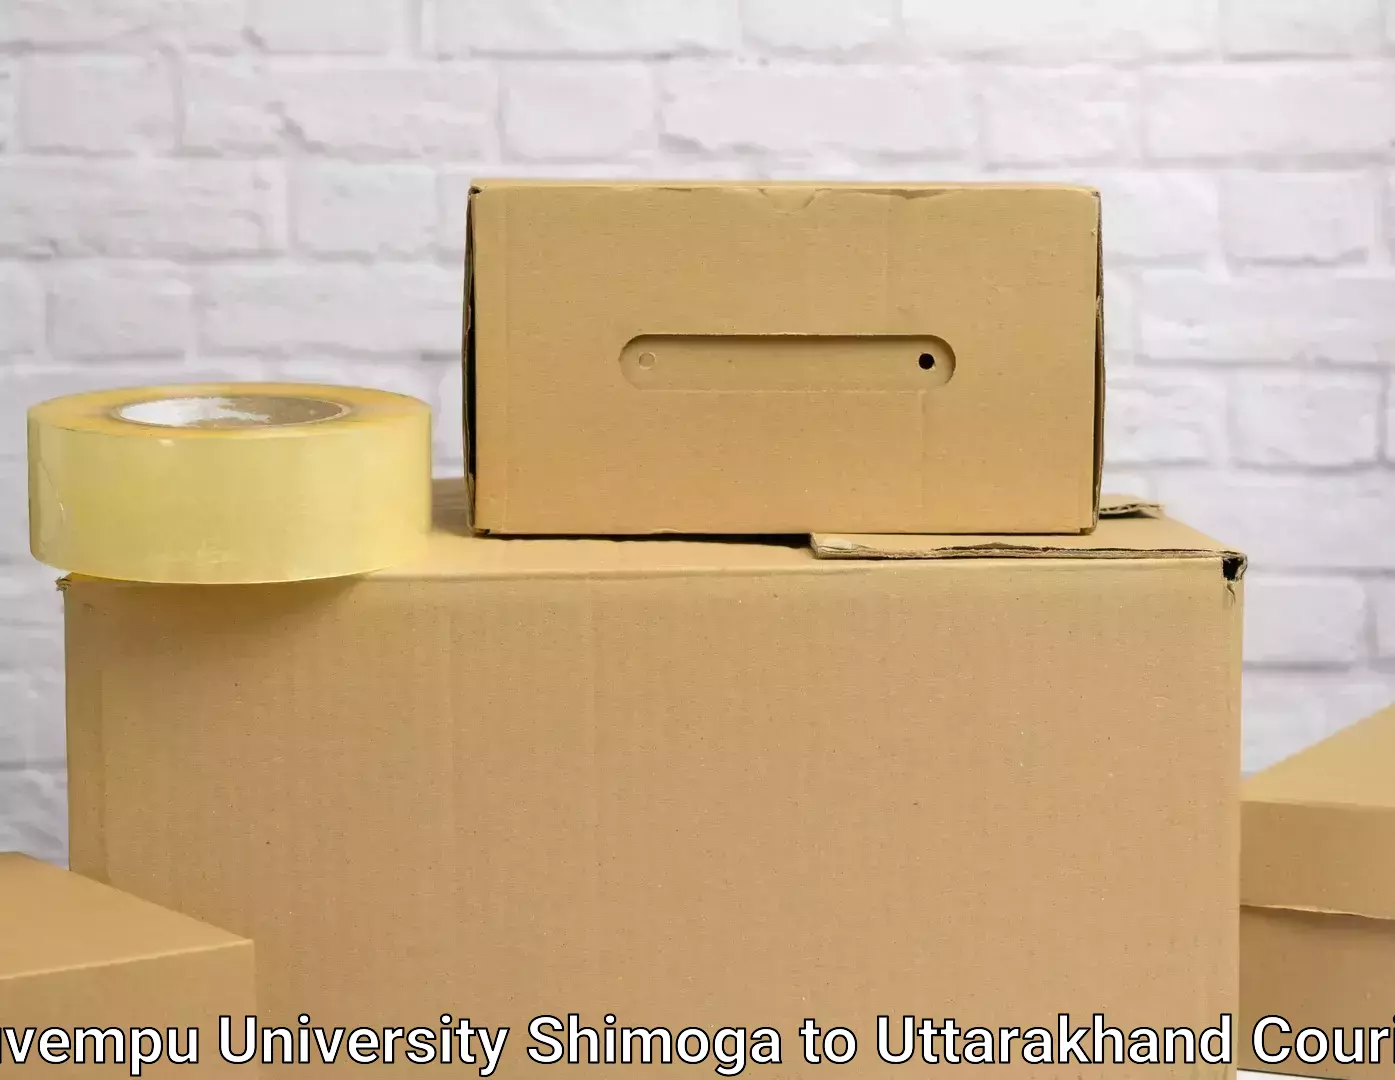 Furniture transport and storage Kuvempu University Shimoga to Uttarakhand